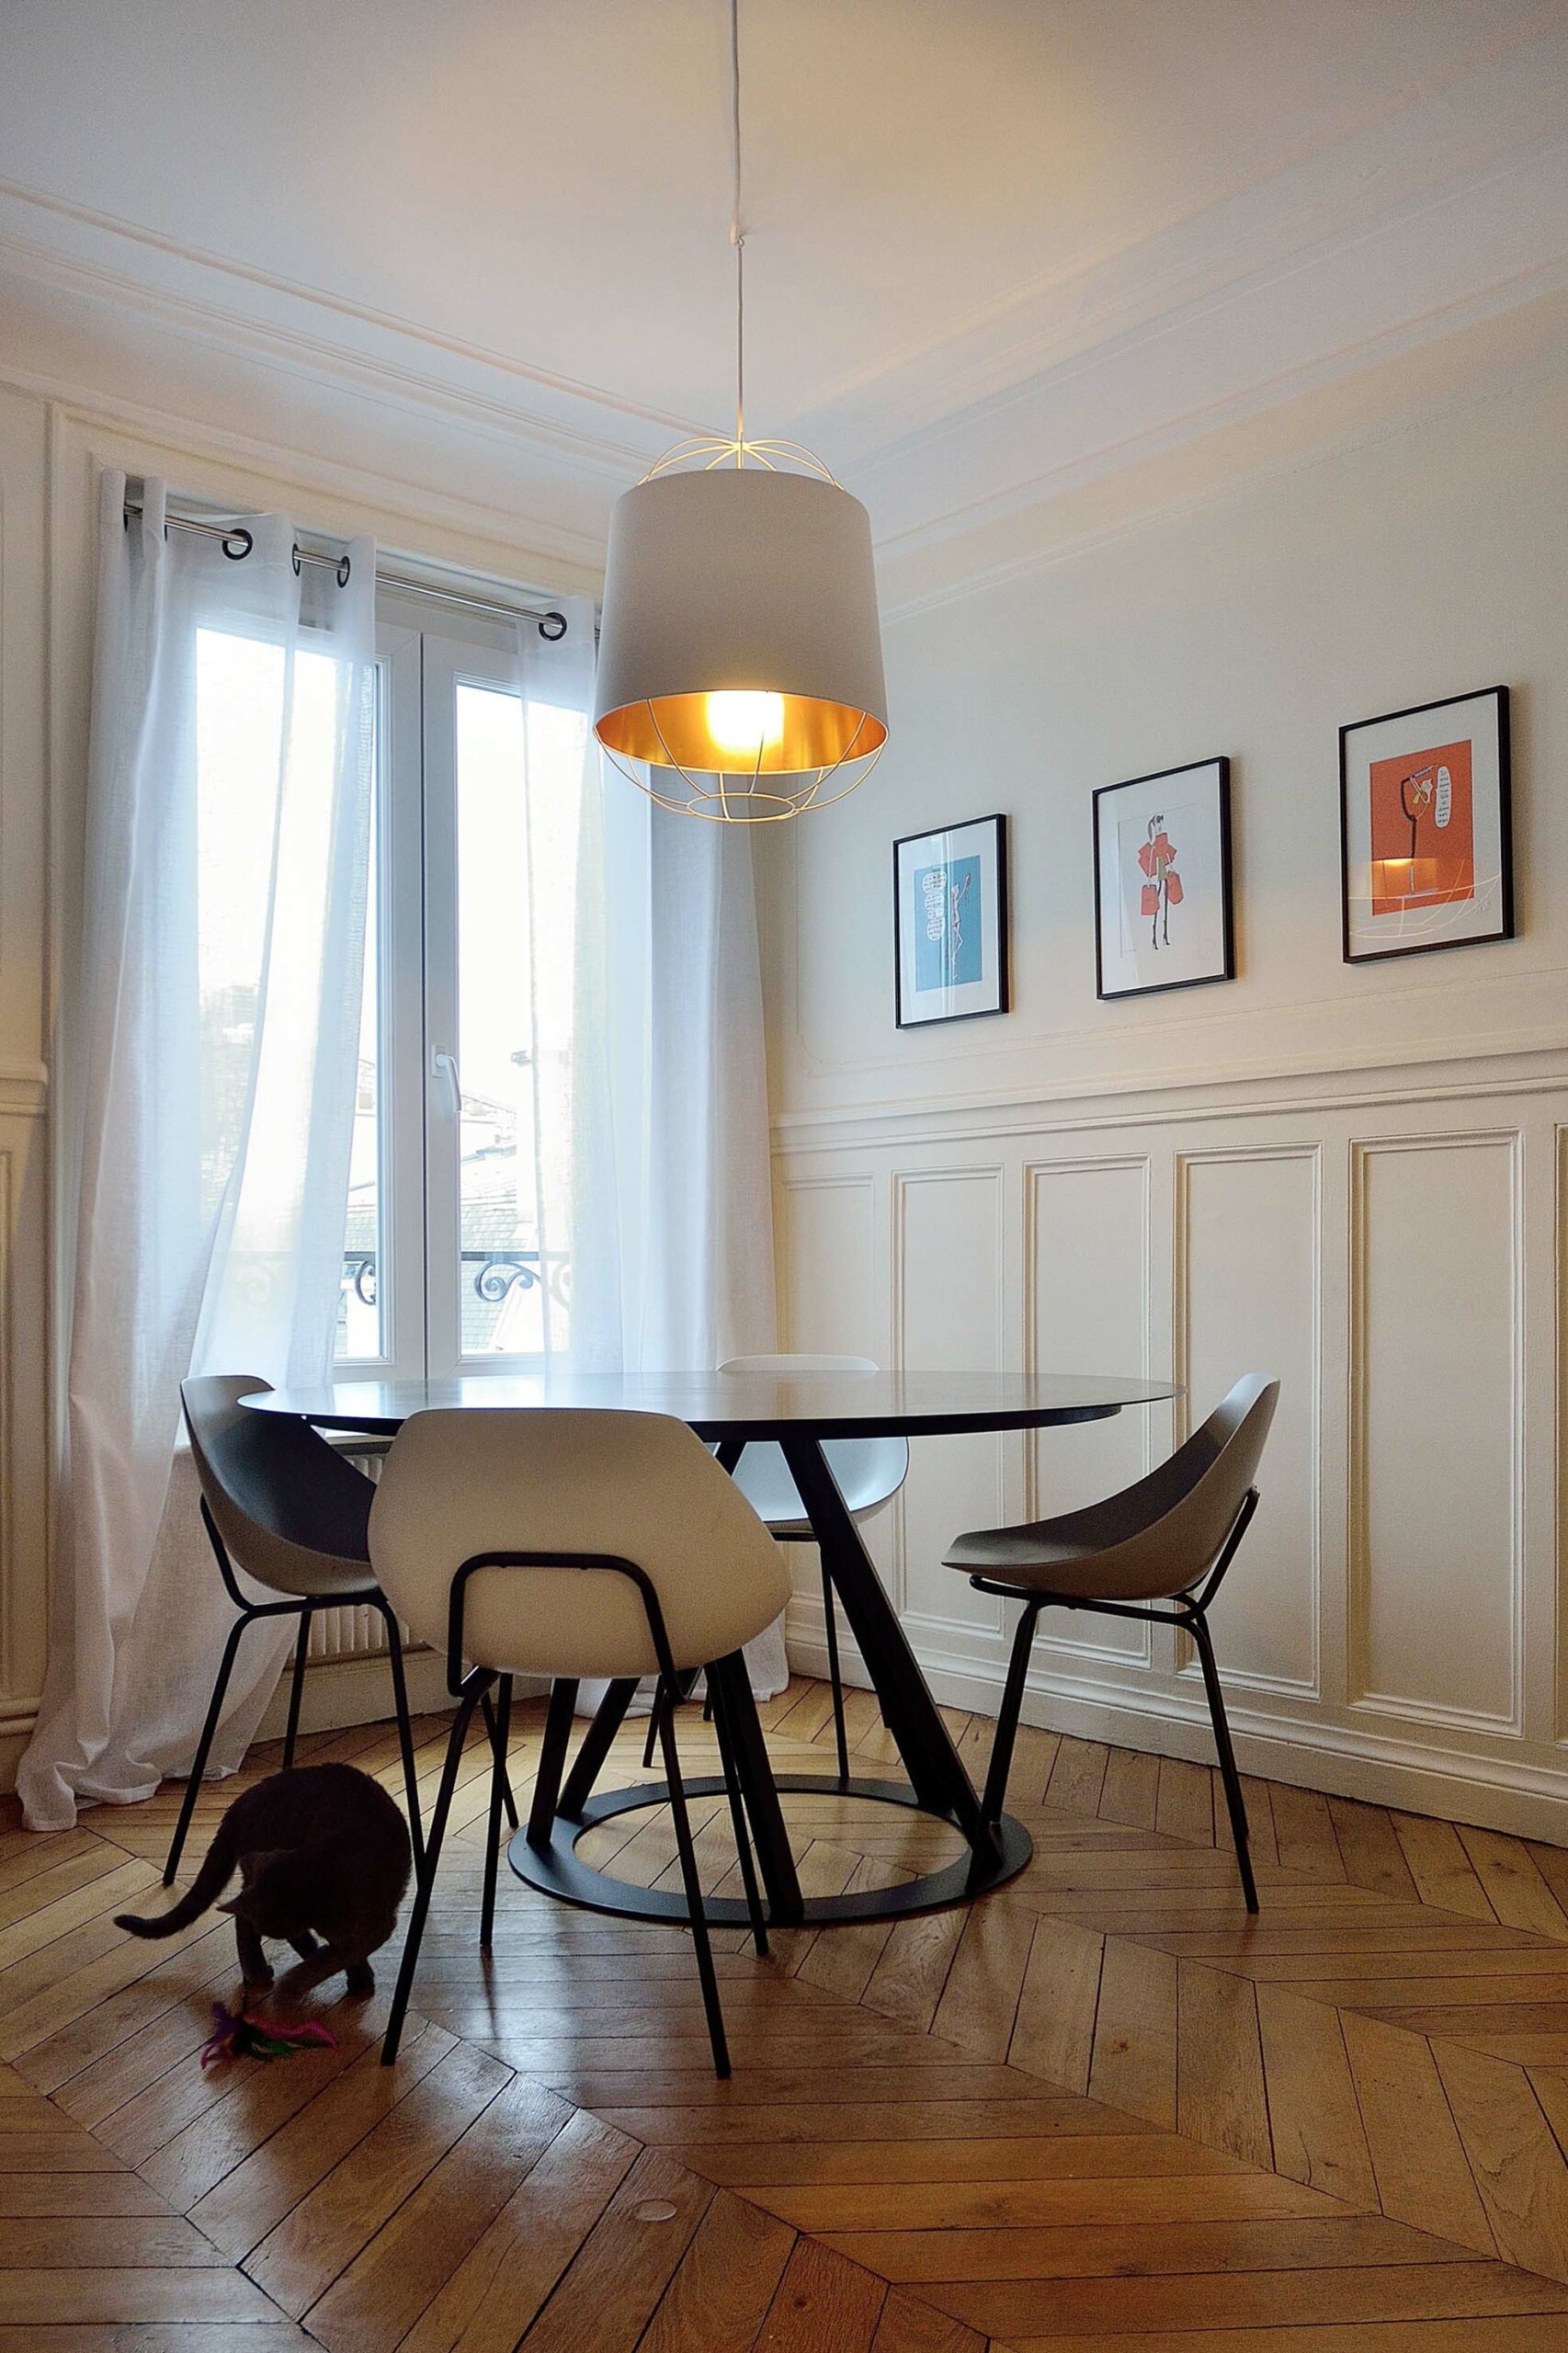 Projet Mirosmenil : agencement d’un appartement parisien - Séjour, Agence Oz by cath, architecture d'intérieur